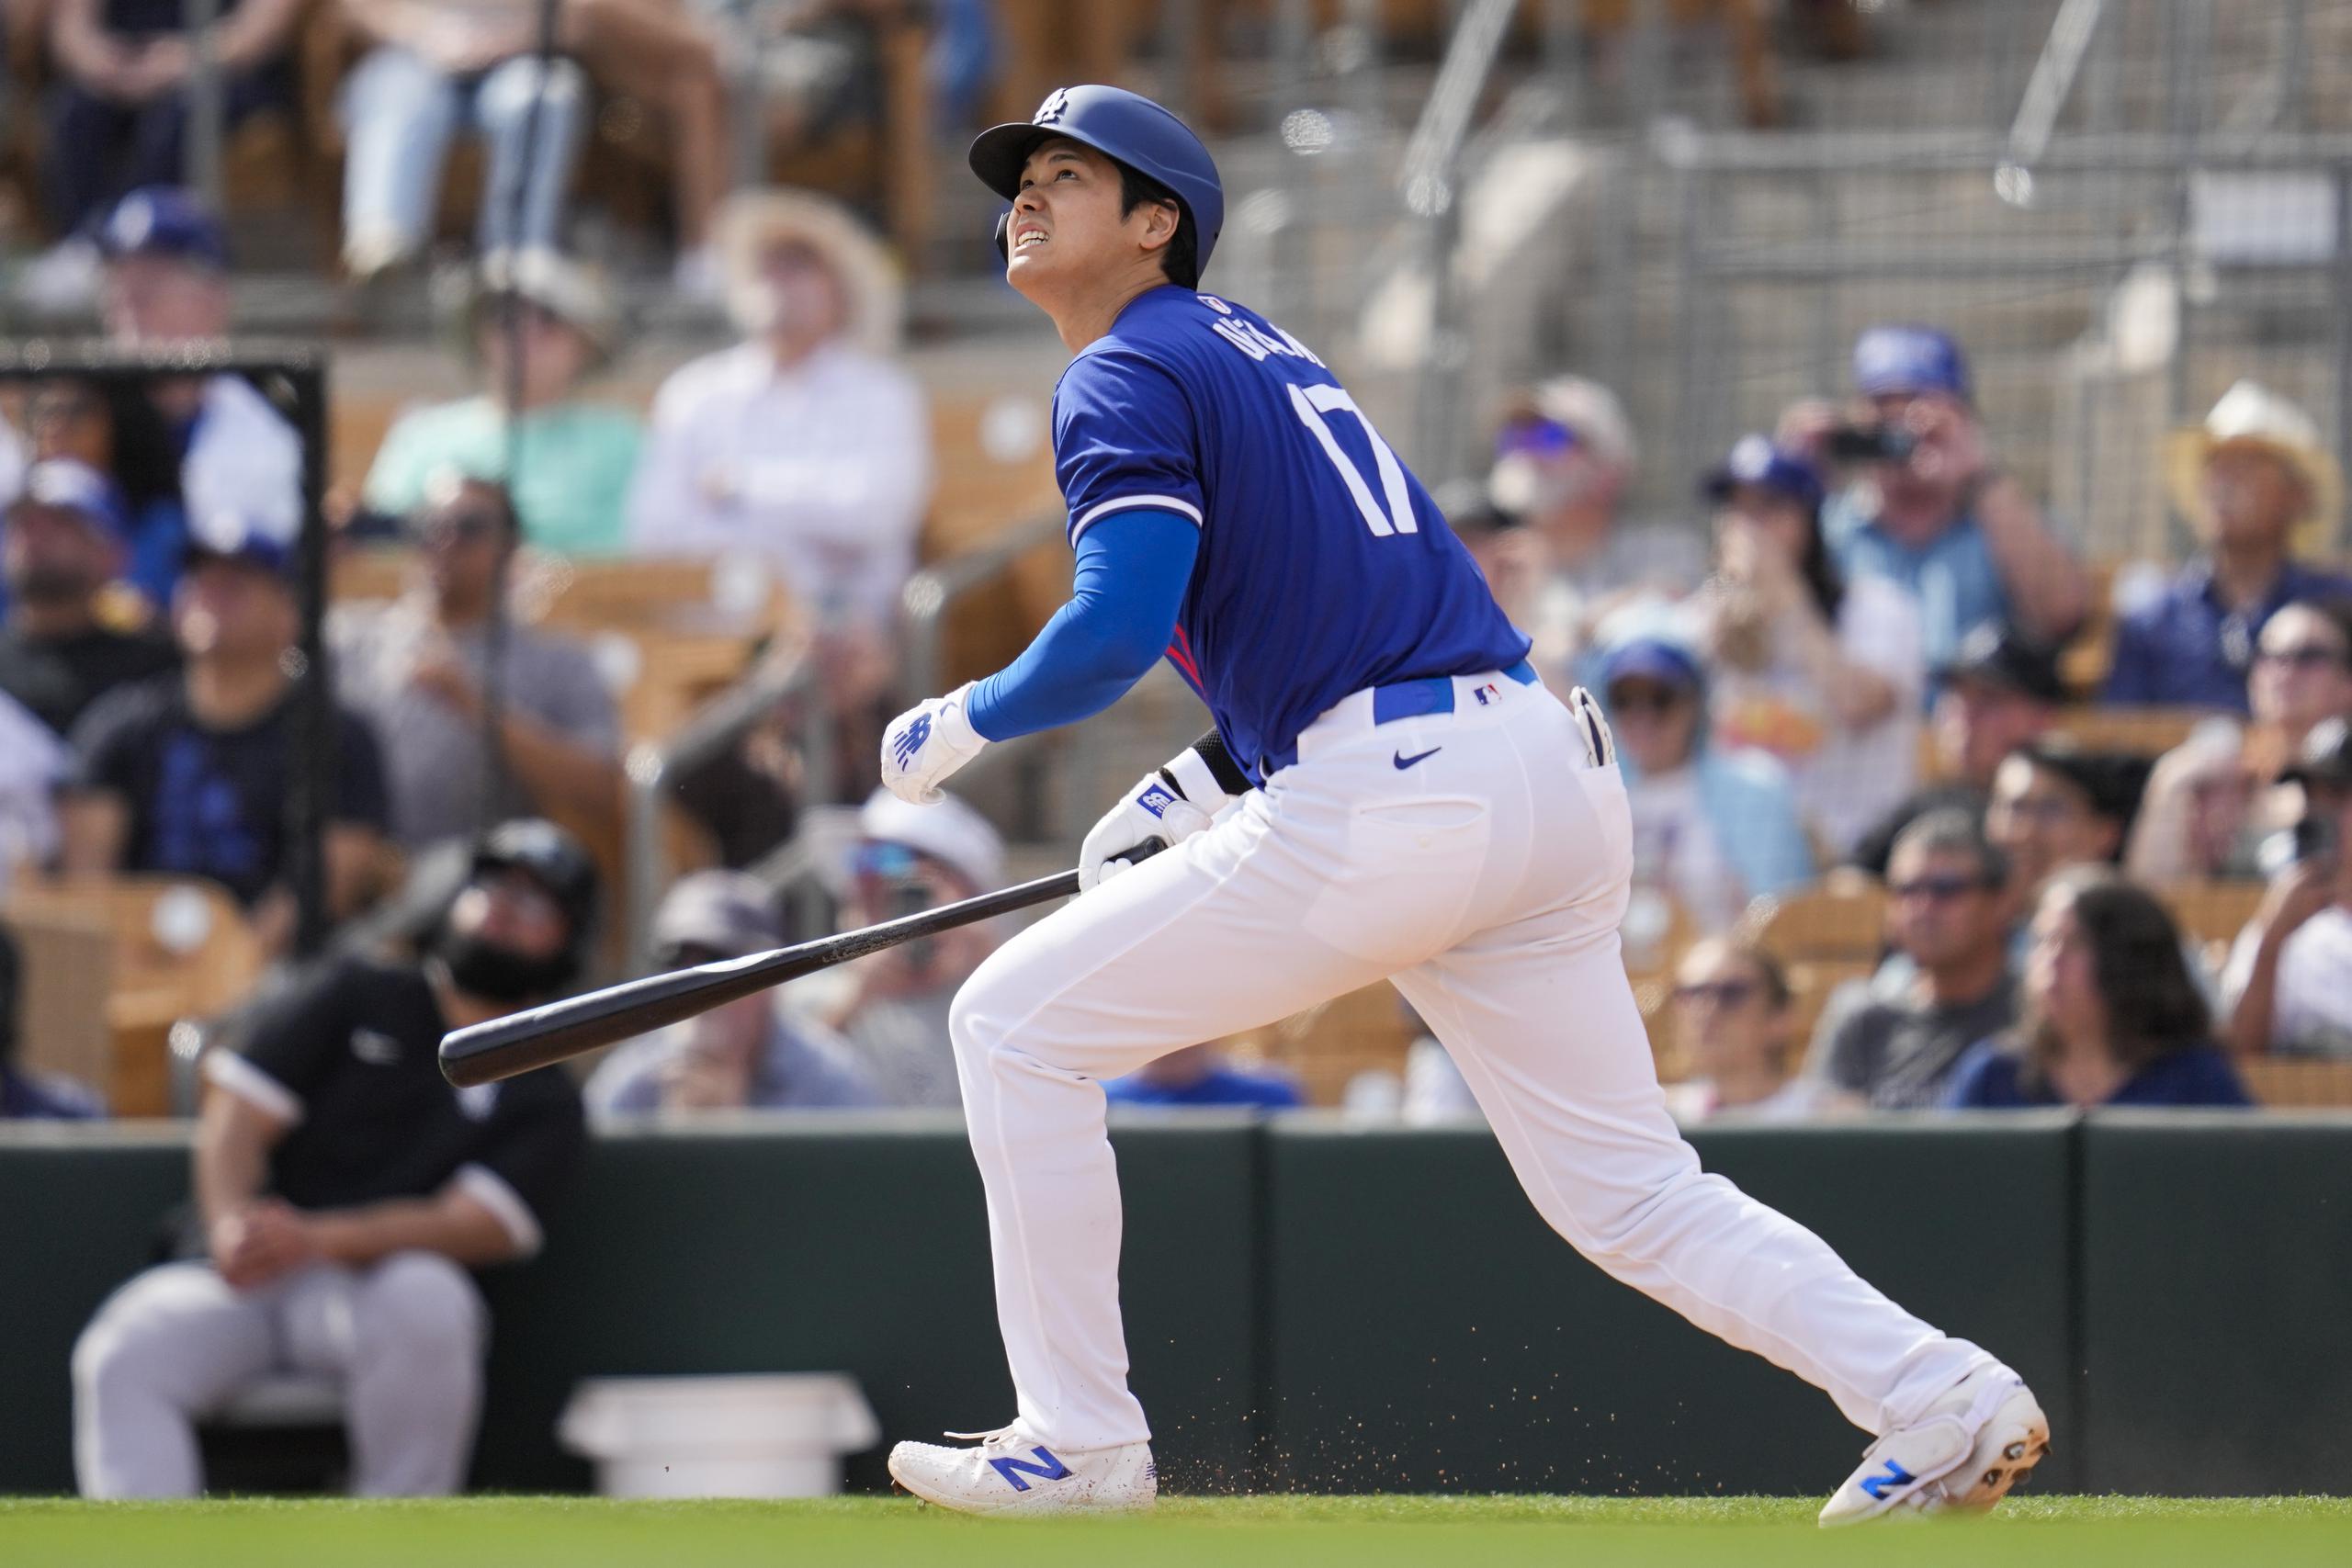 El bateador designado de los Dodgers de Los Ángeles Shohei Ohtani reacciona tras conectar un jonrón en un juego de pretemporada ante los White Sox.